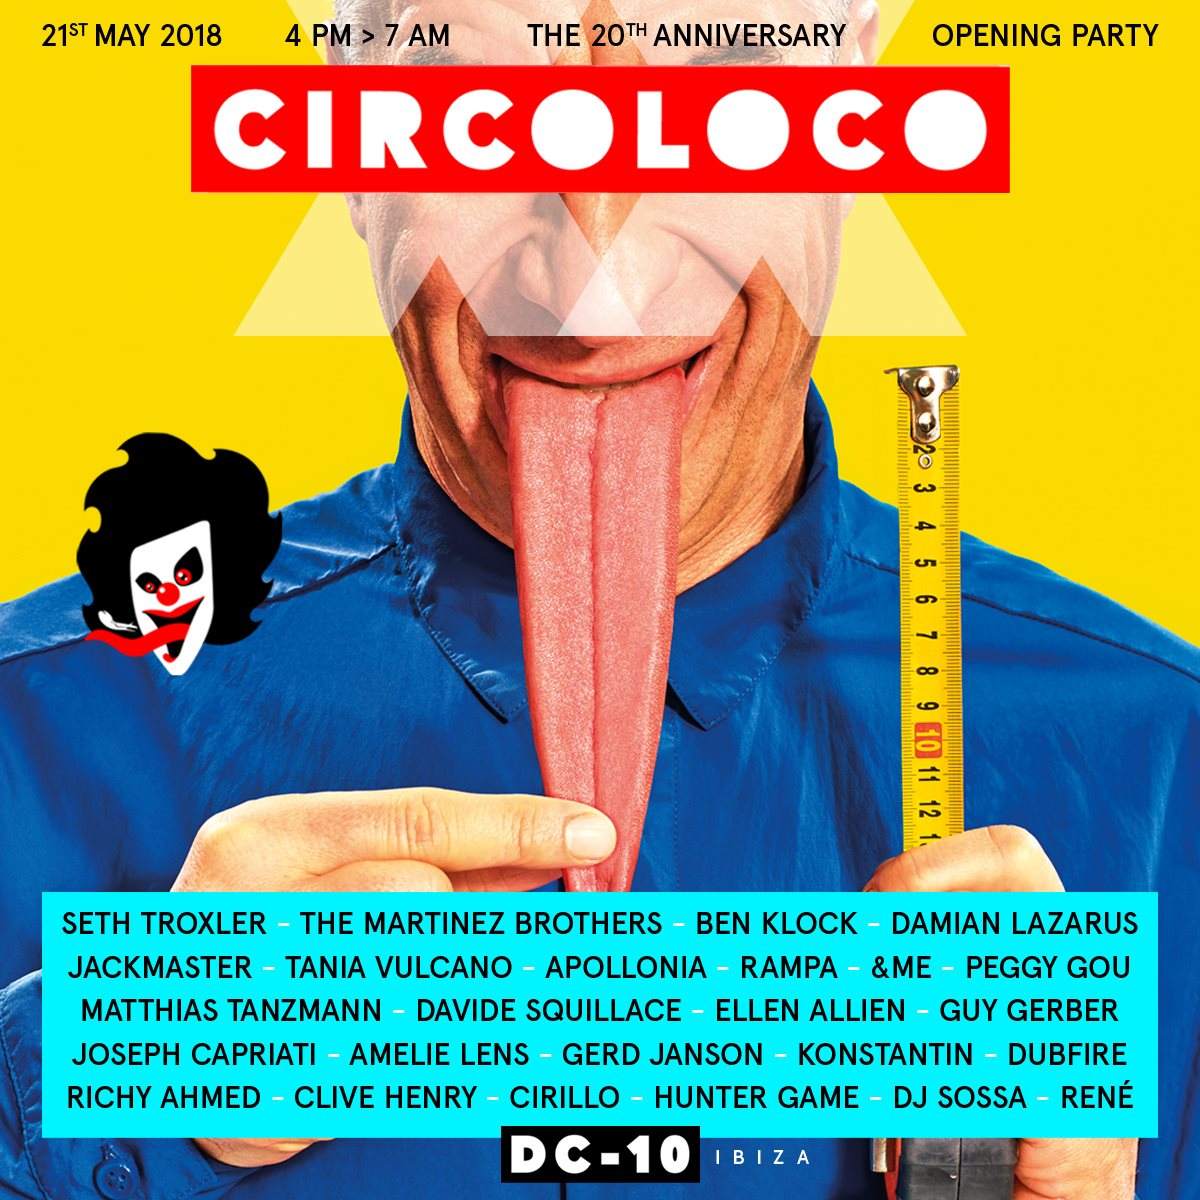 Circoloco Opening Party 2018 - Página frontal